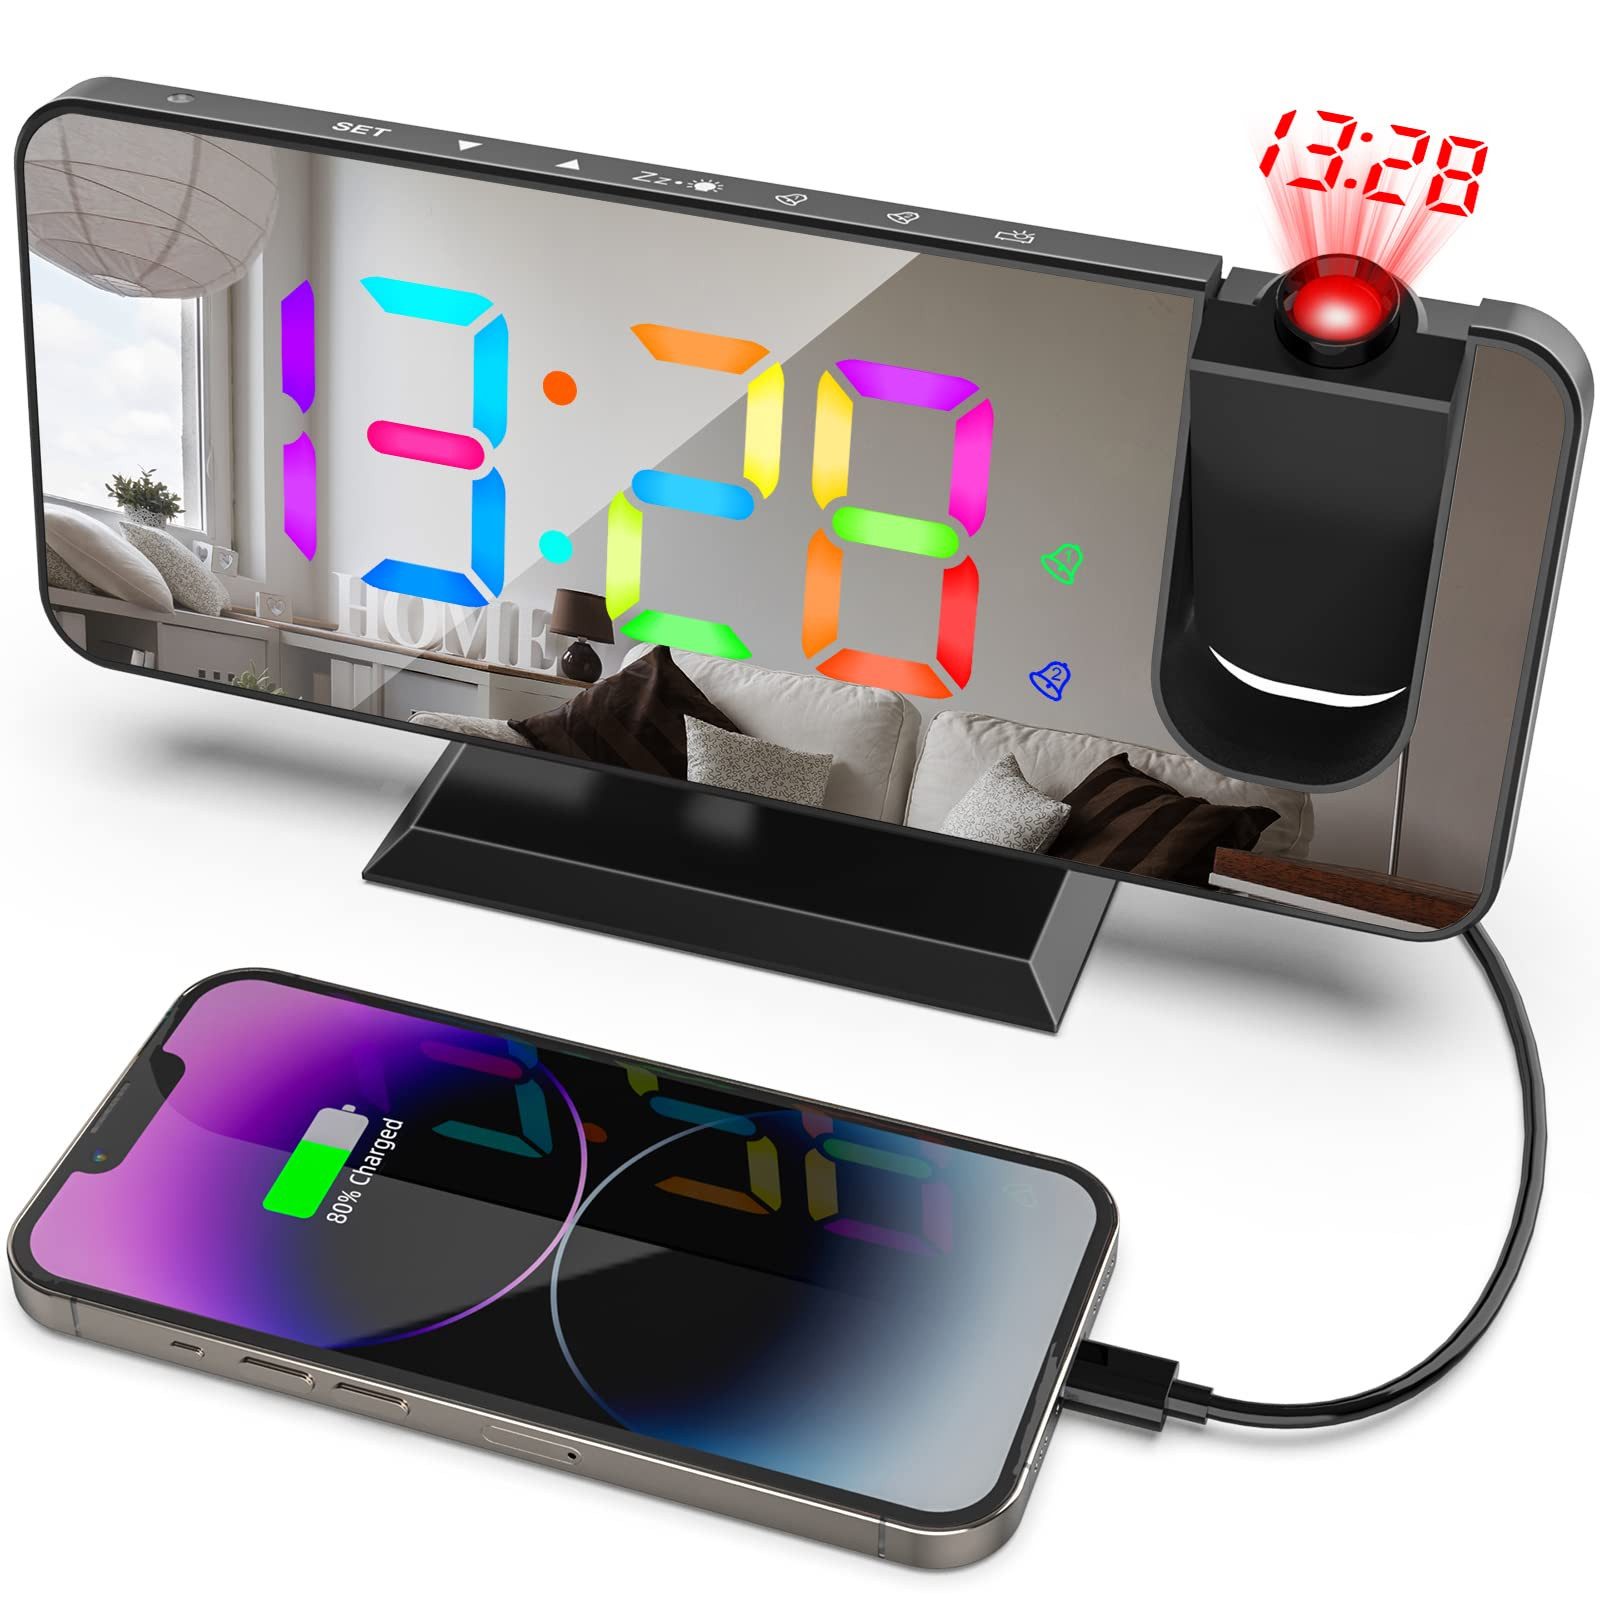 BlingBin Projektionswecker Digitale Projektionsuhr RGB Gradienten Projektionsuhr Spiegelwecker 180° Drehung Nachttischuhr mit LED-Anzeige, Snooze Dual-Alarm USB